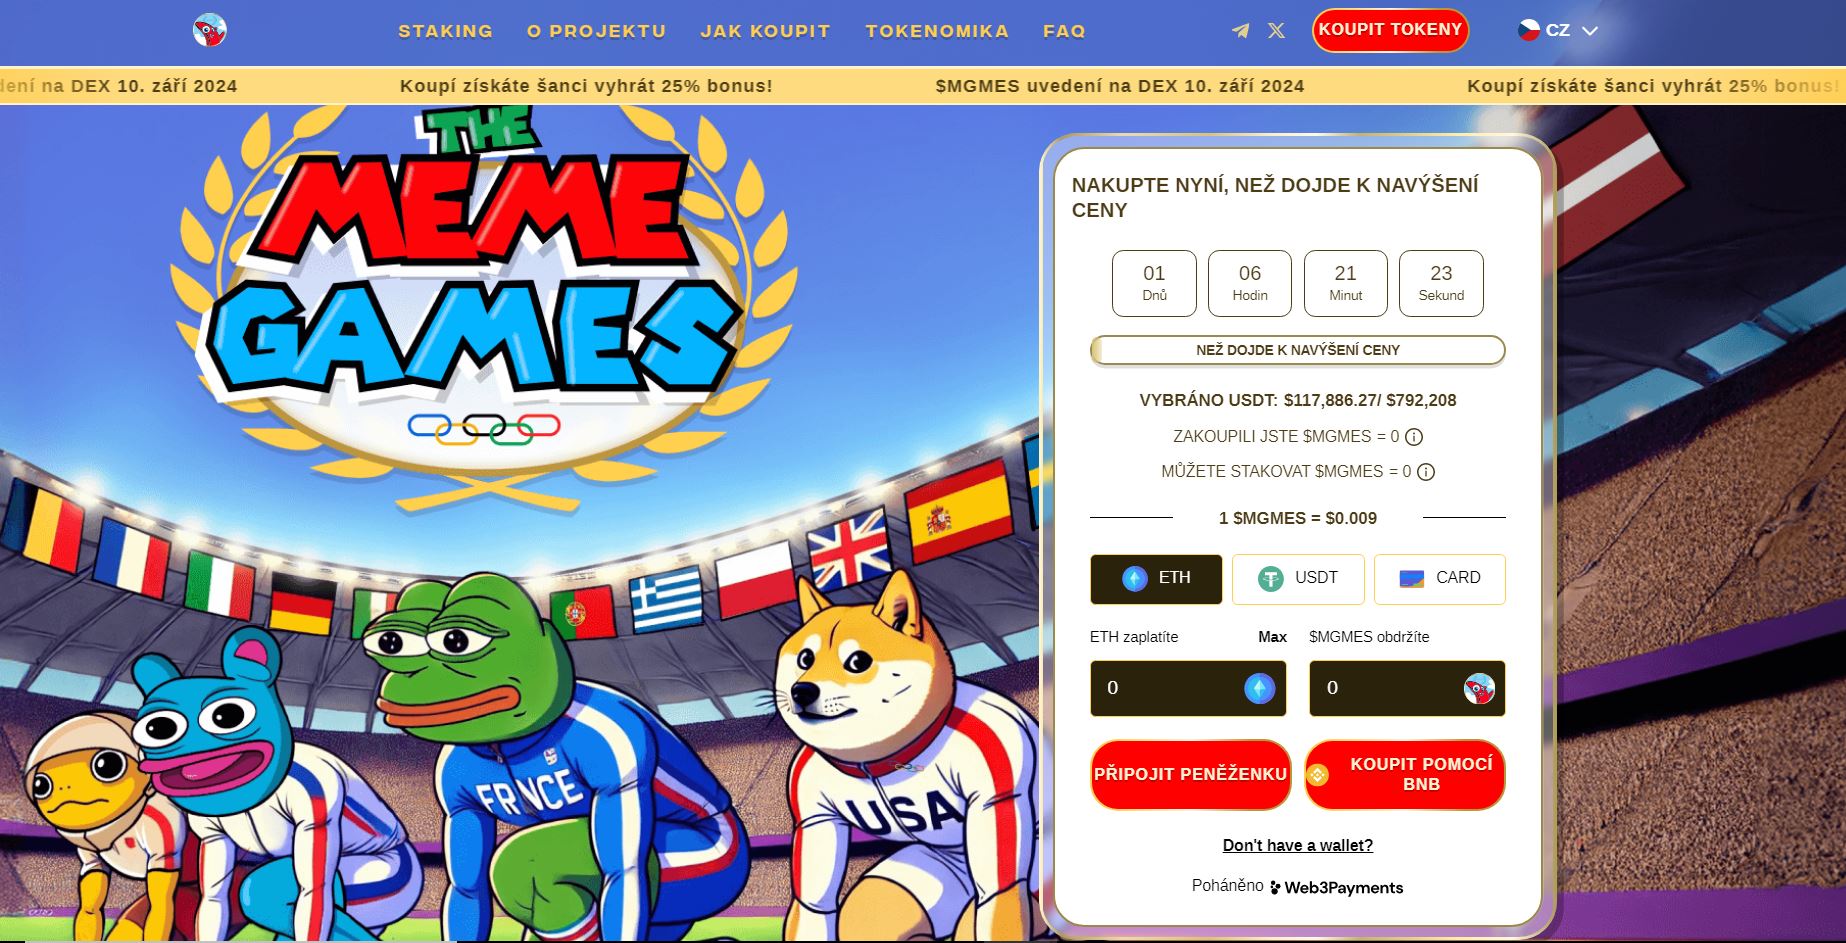 Předprodej projektu Meme Games, ve kterém lze získat i kryptoměny zdarma